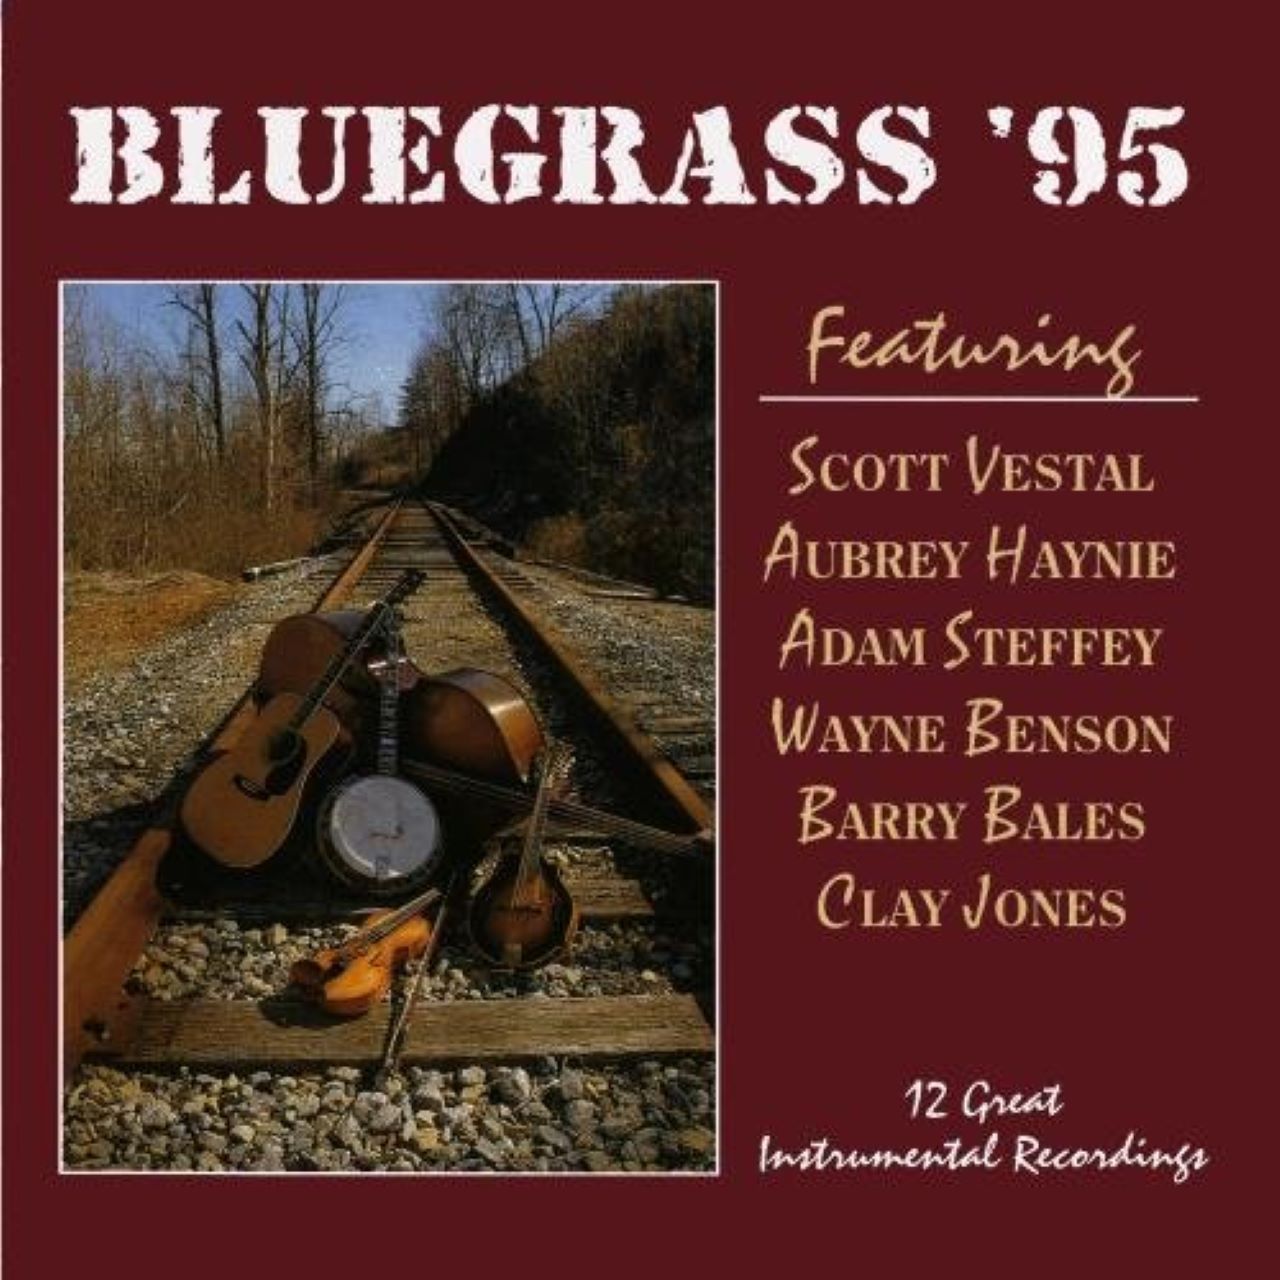 A.A.V.V. - Bluegrass '95 cover album